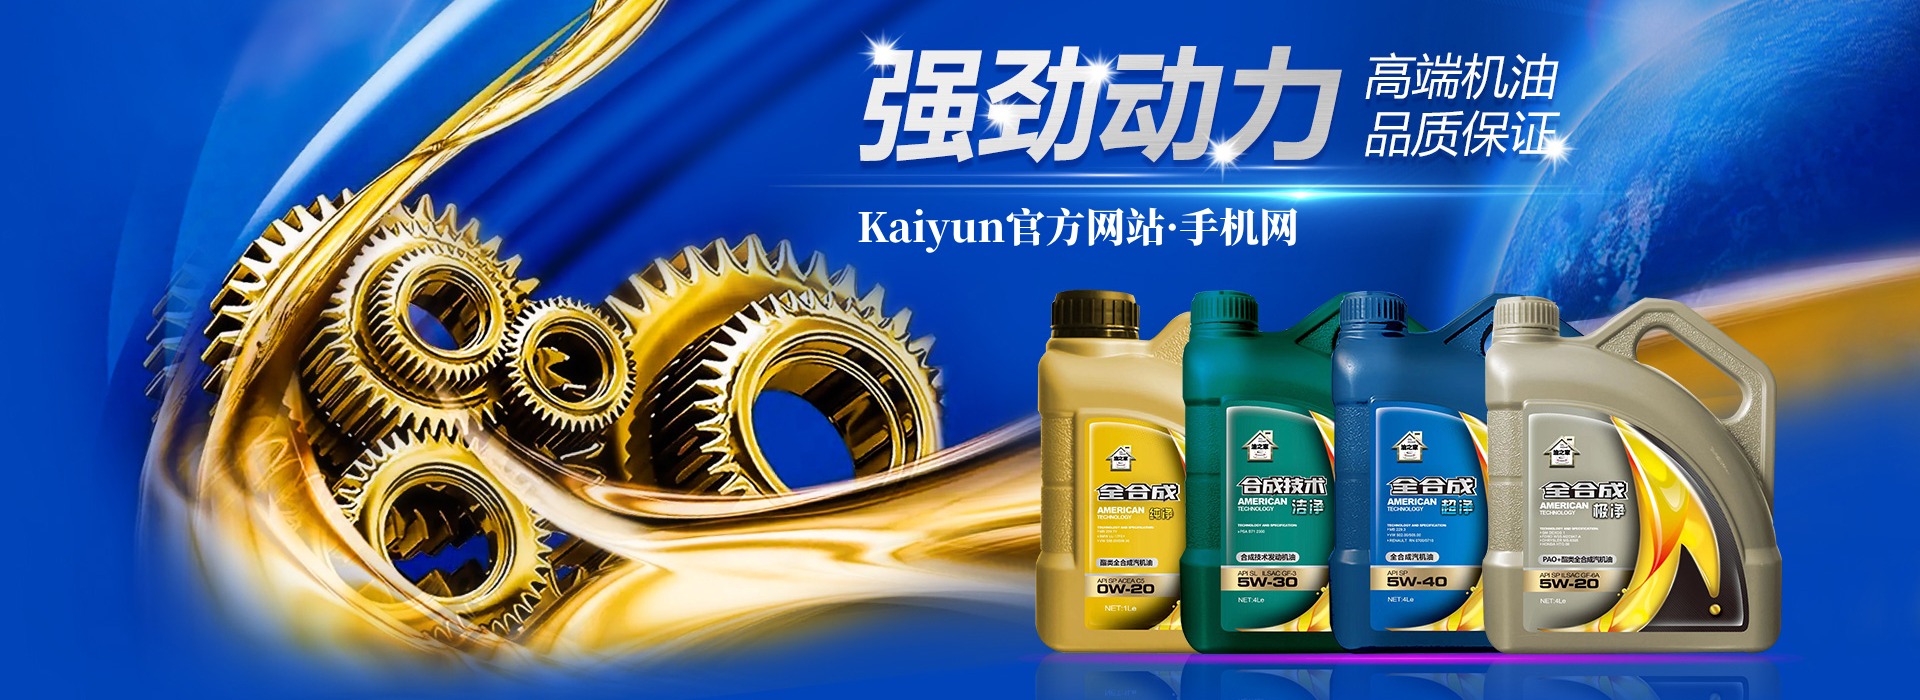 Kaiyun官方网站手机网 - 幻燈片1